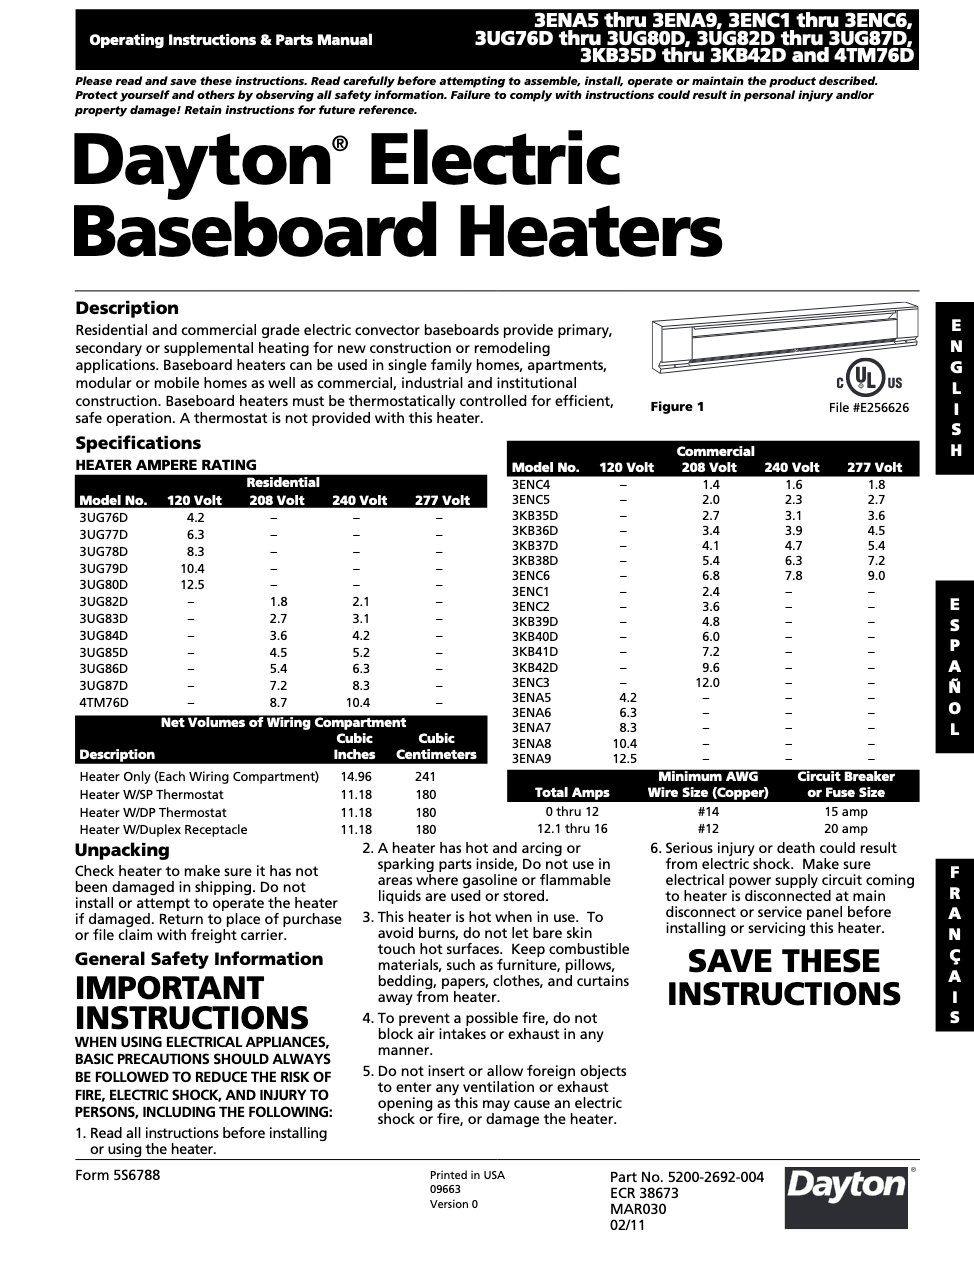 Dayton Electric Baseboard Heater Wiring Diagram PDF